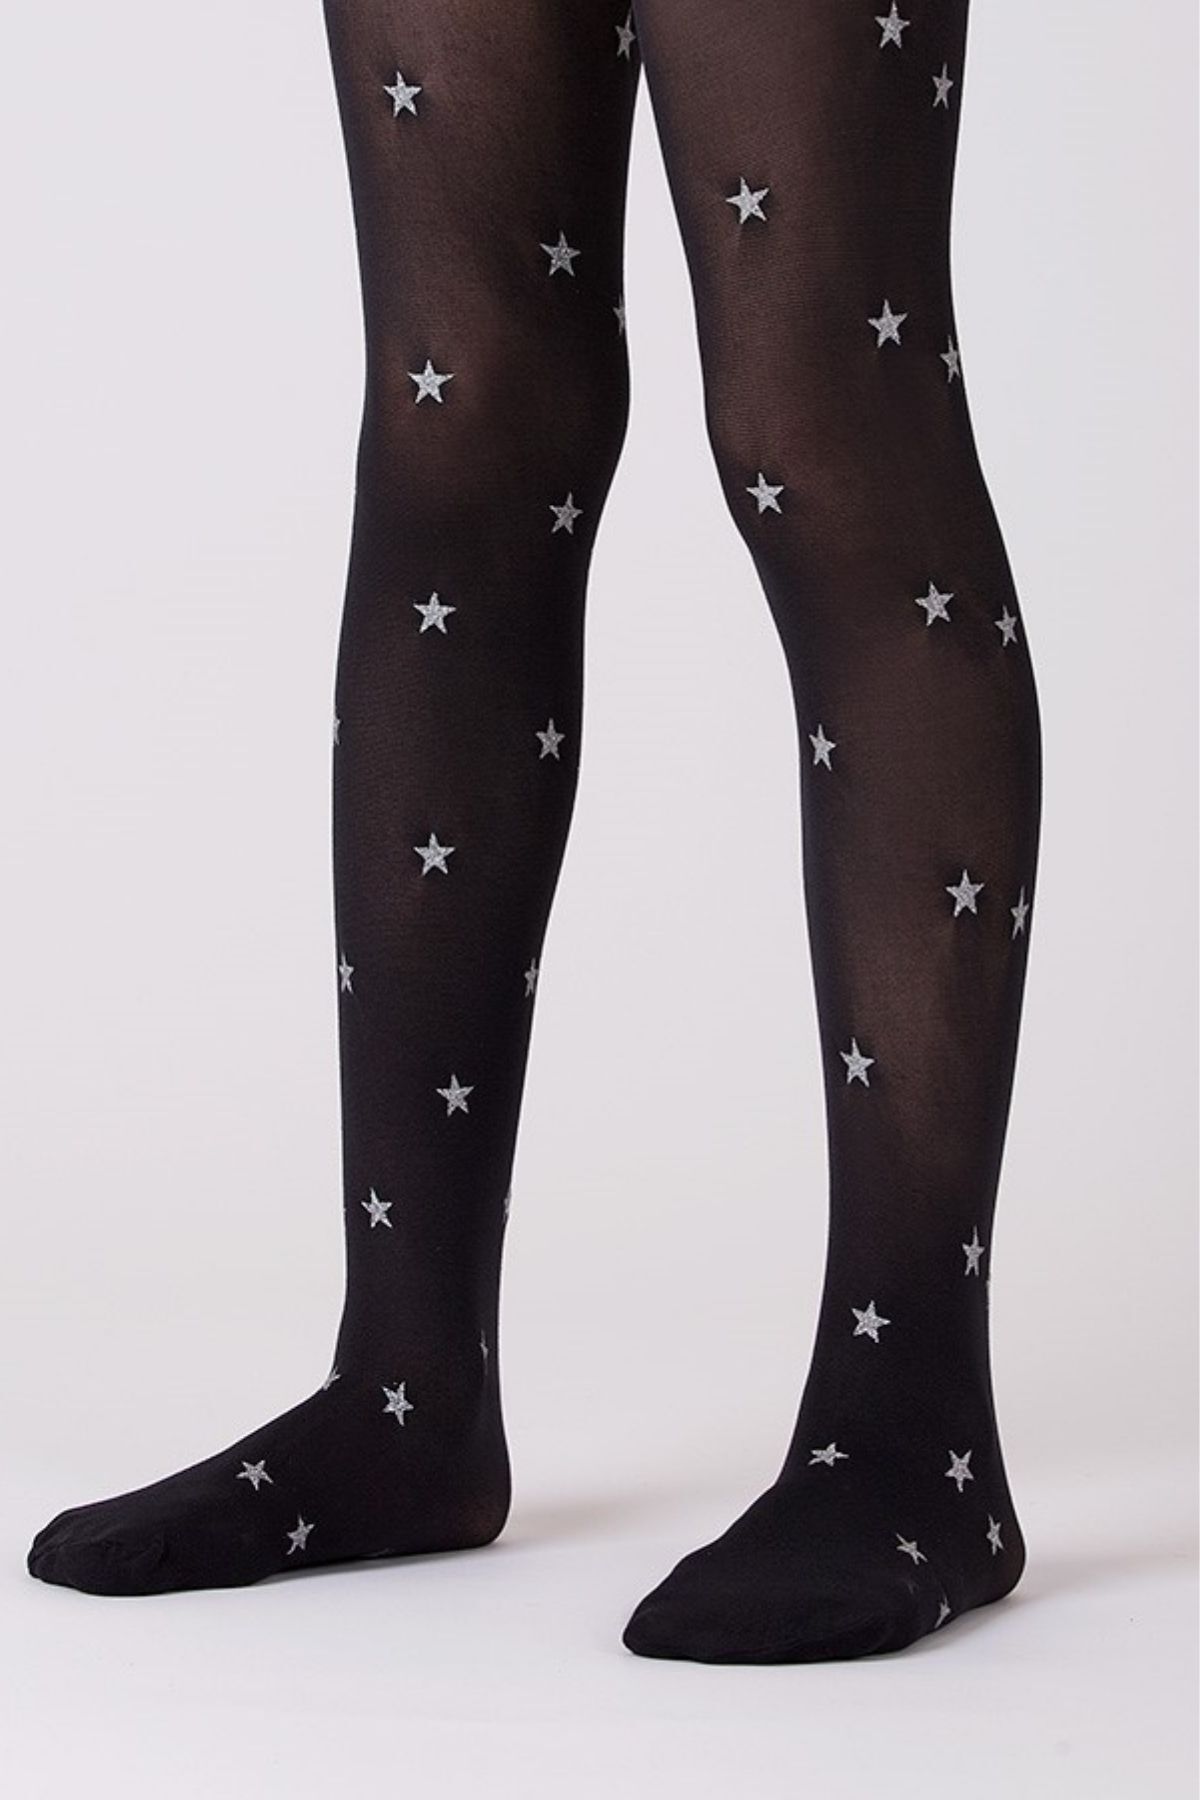 Goose Gümüş Yıldız Desenli Siyah Kız Çocuk Külotlu Çorap